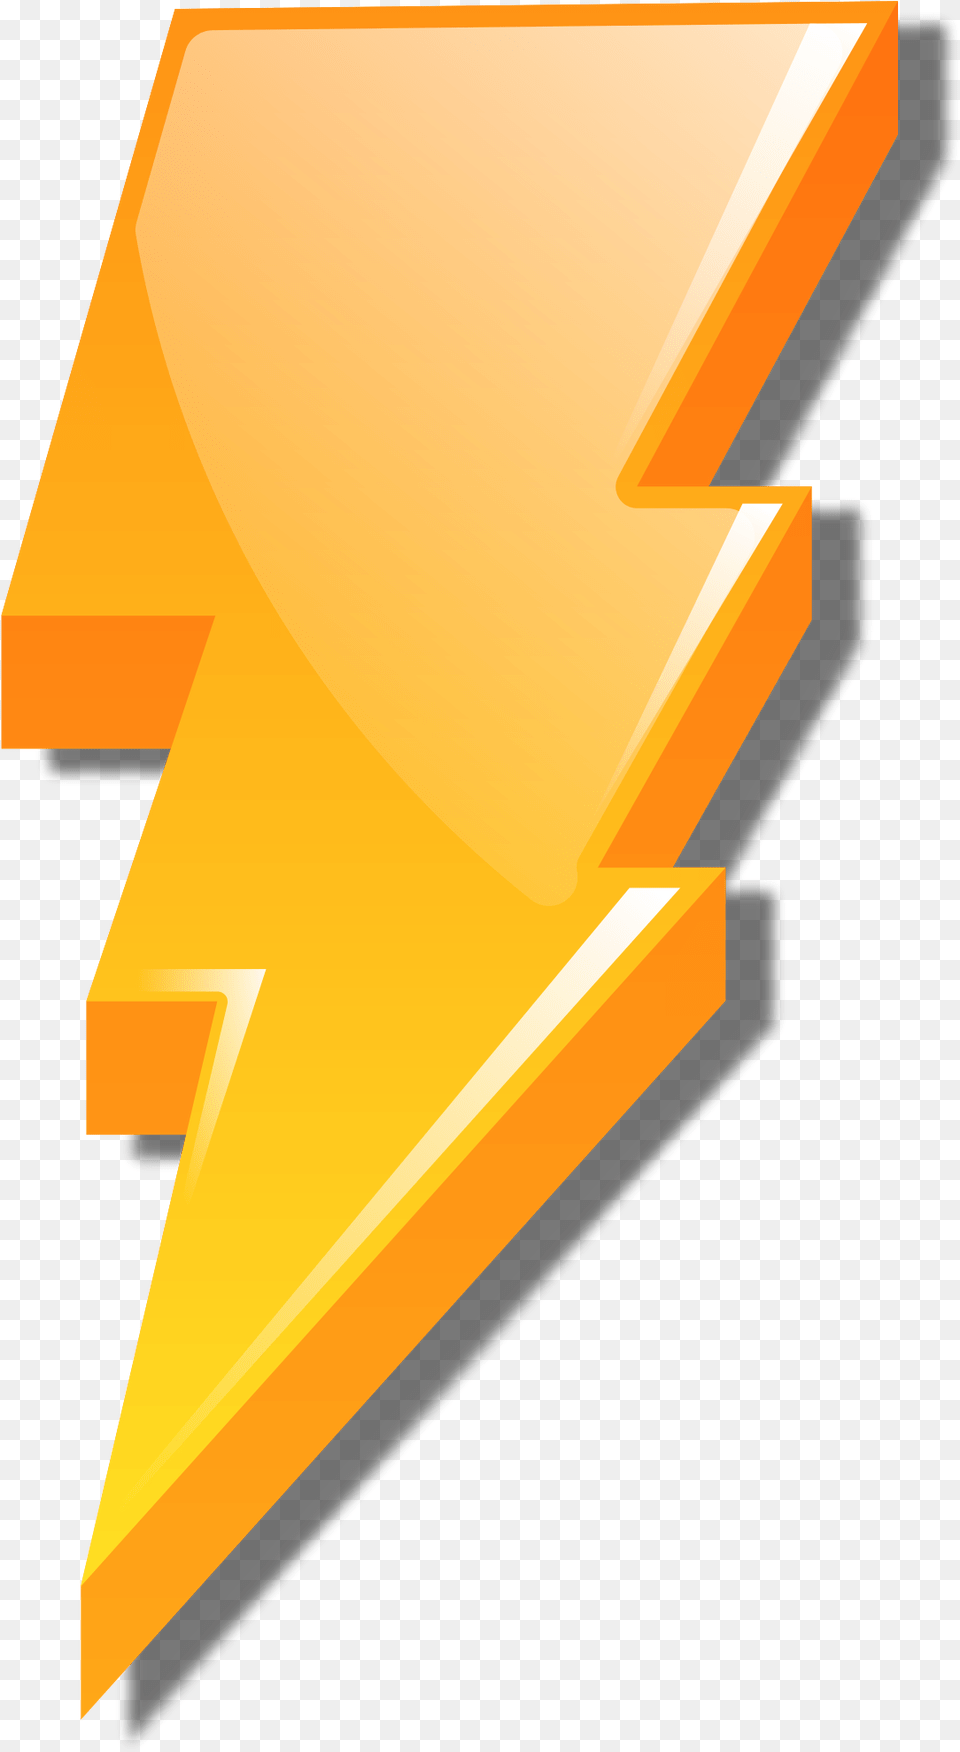 Download Hd Open Power Rangers Lightning Bolt Transparent Lightning Bolt Power Rangers Logo, Weapon Png